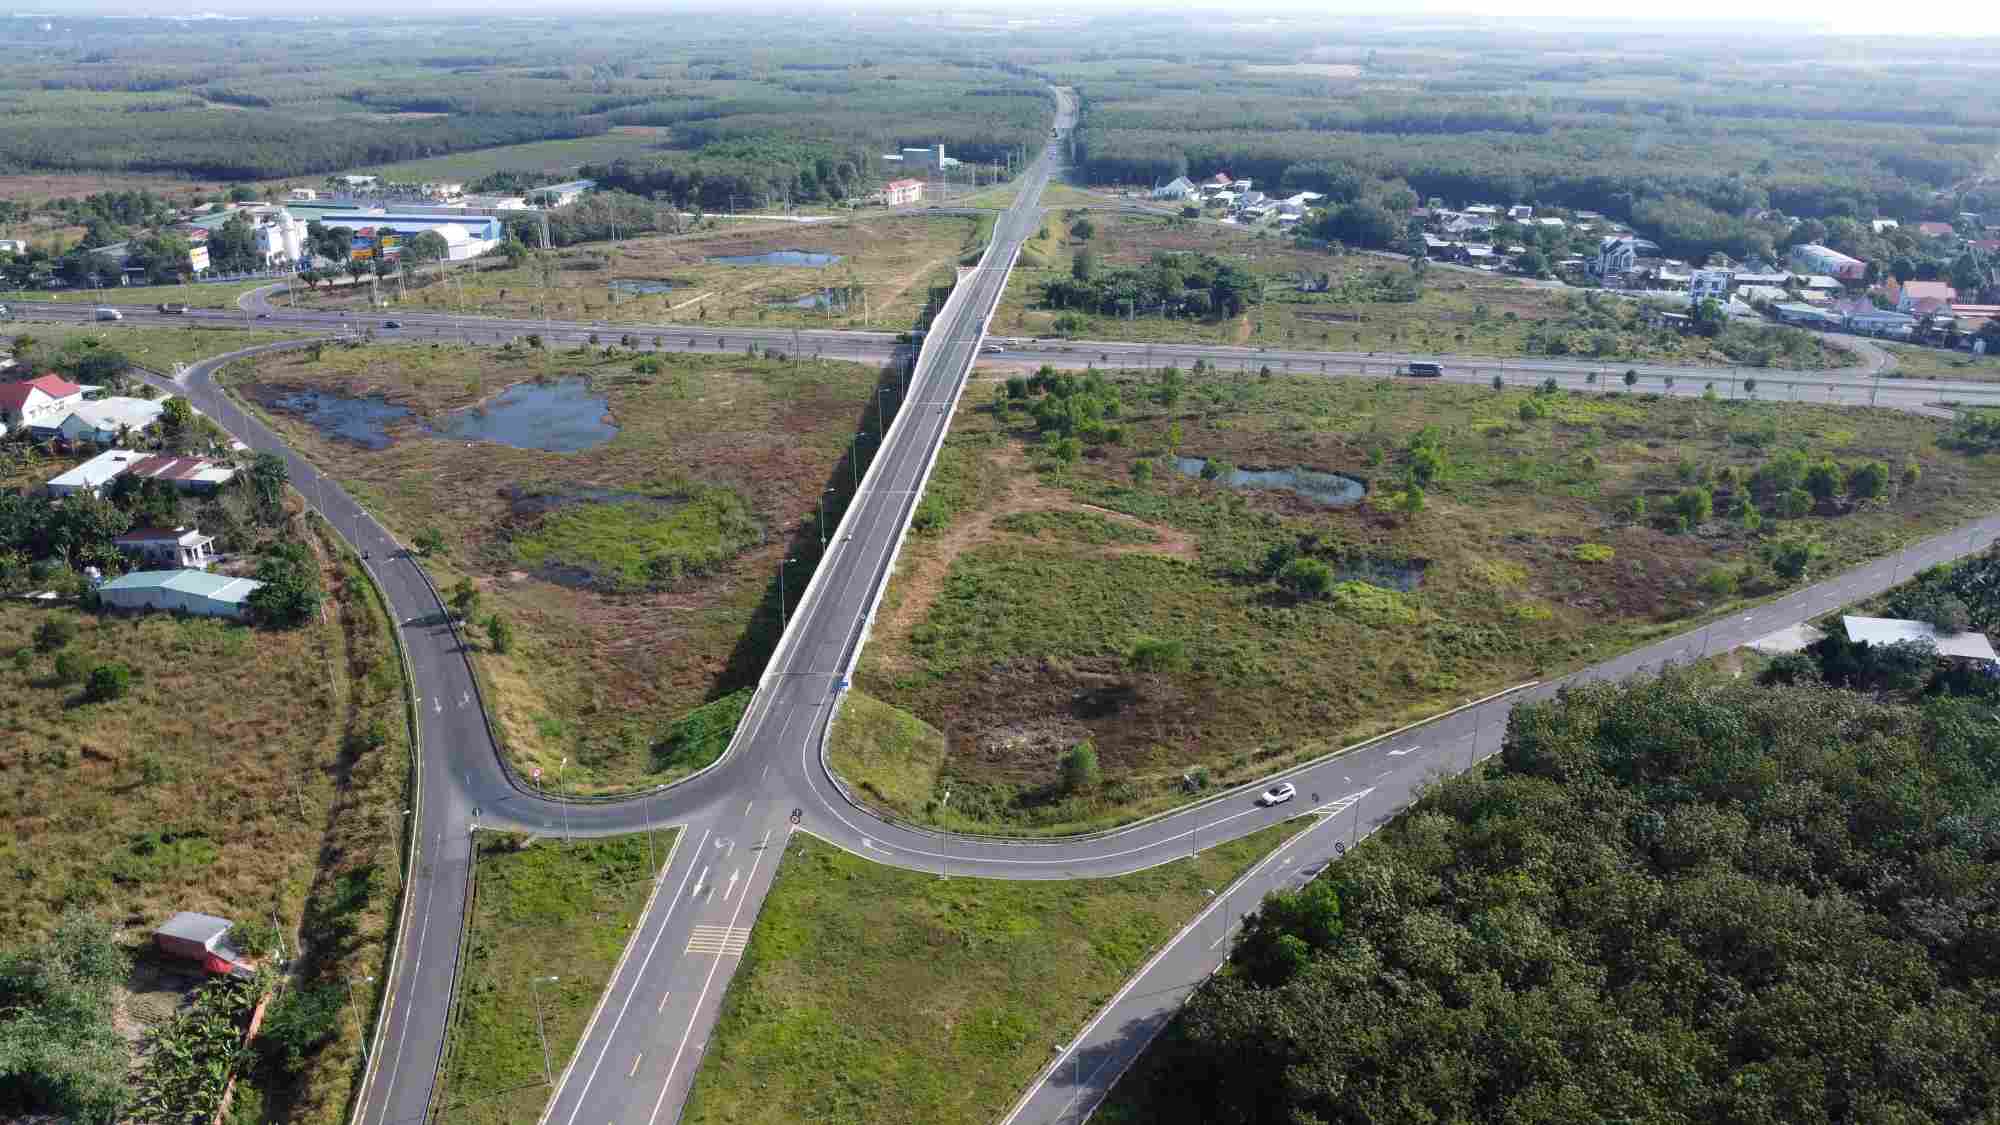 Đây là đường Hồ Chí Minh (quốc lộ 14), đoạn đi qua tỉnh Bình Phước dài khoảng 120km cùng với đoạn qua các tỉnh Tây Nguyên đã được nâng cấp mở rộng năm 2015.